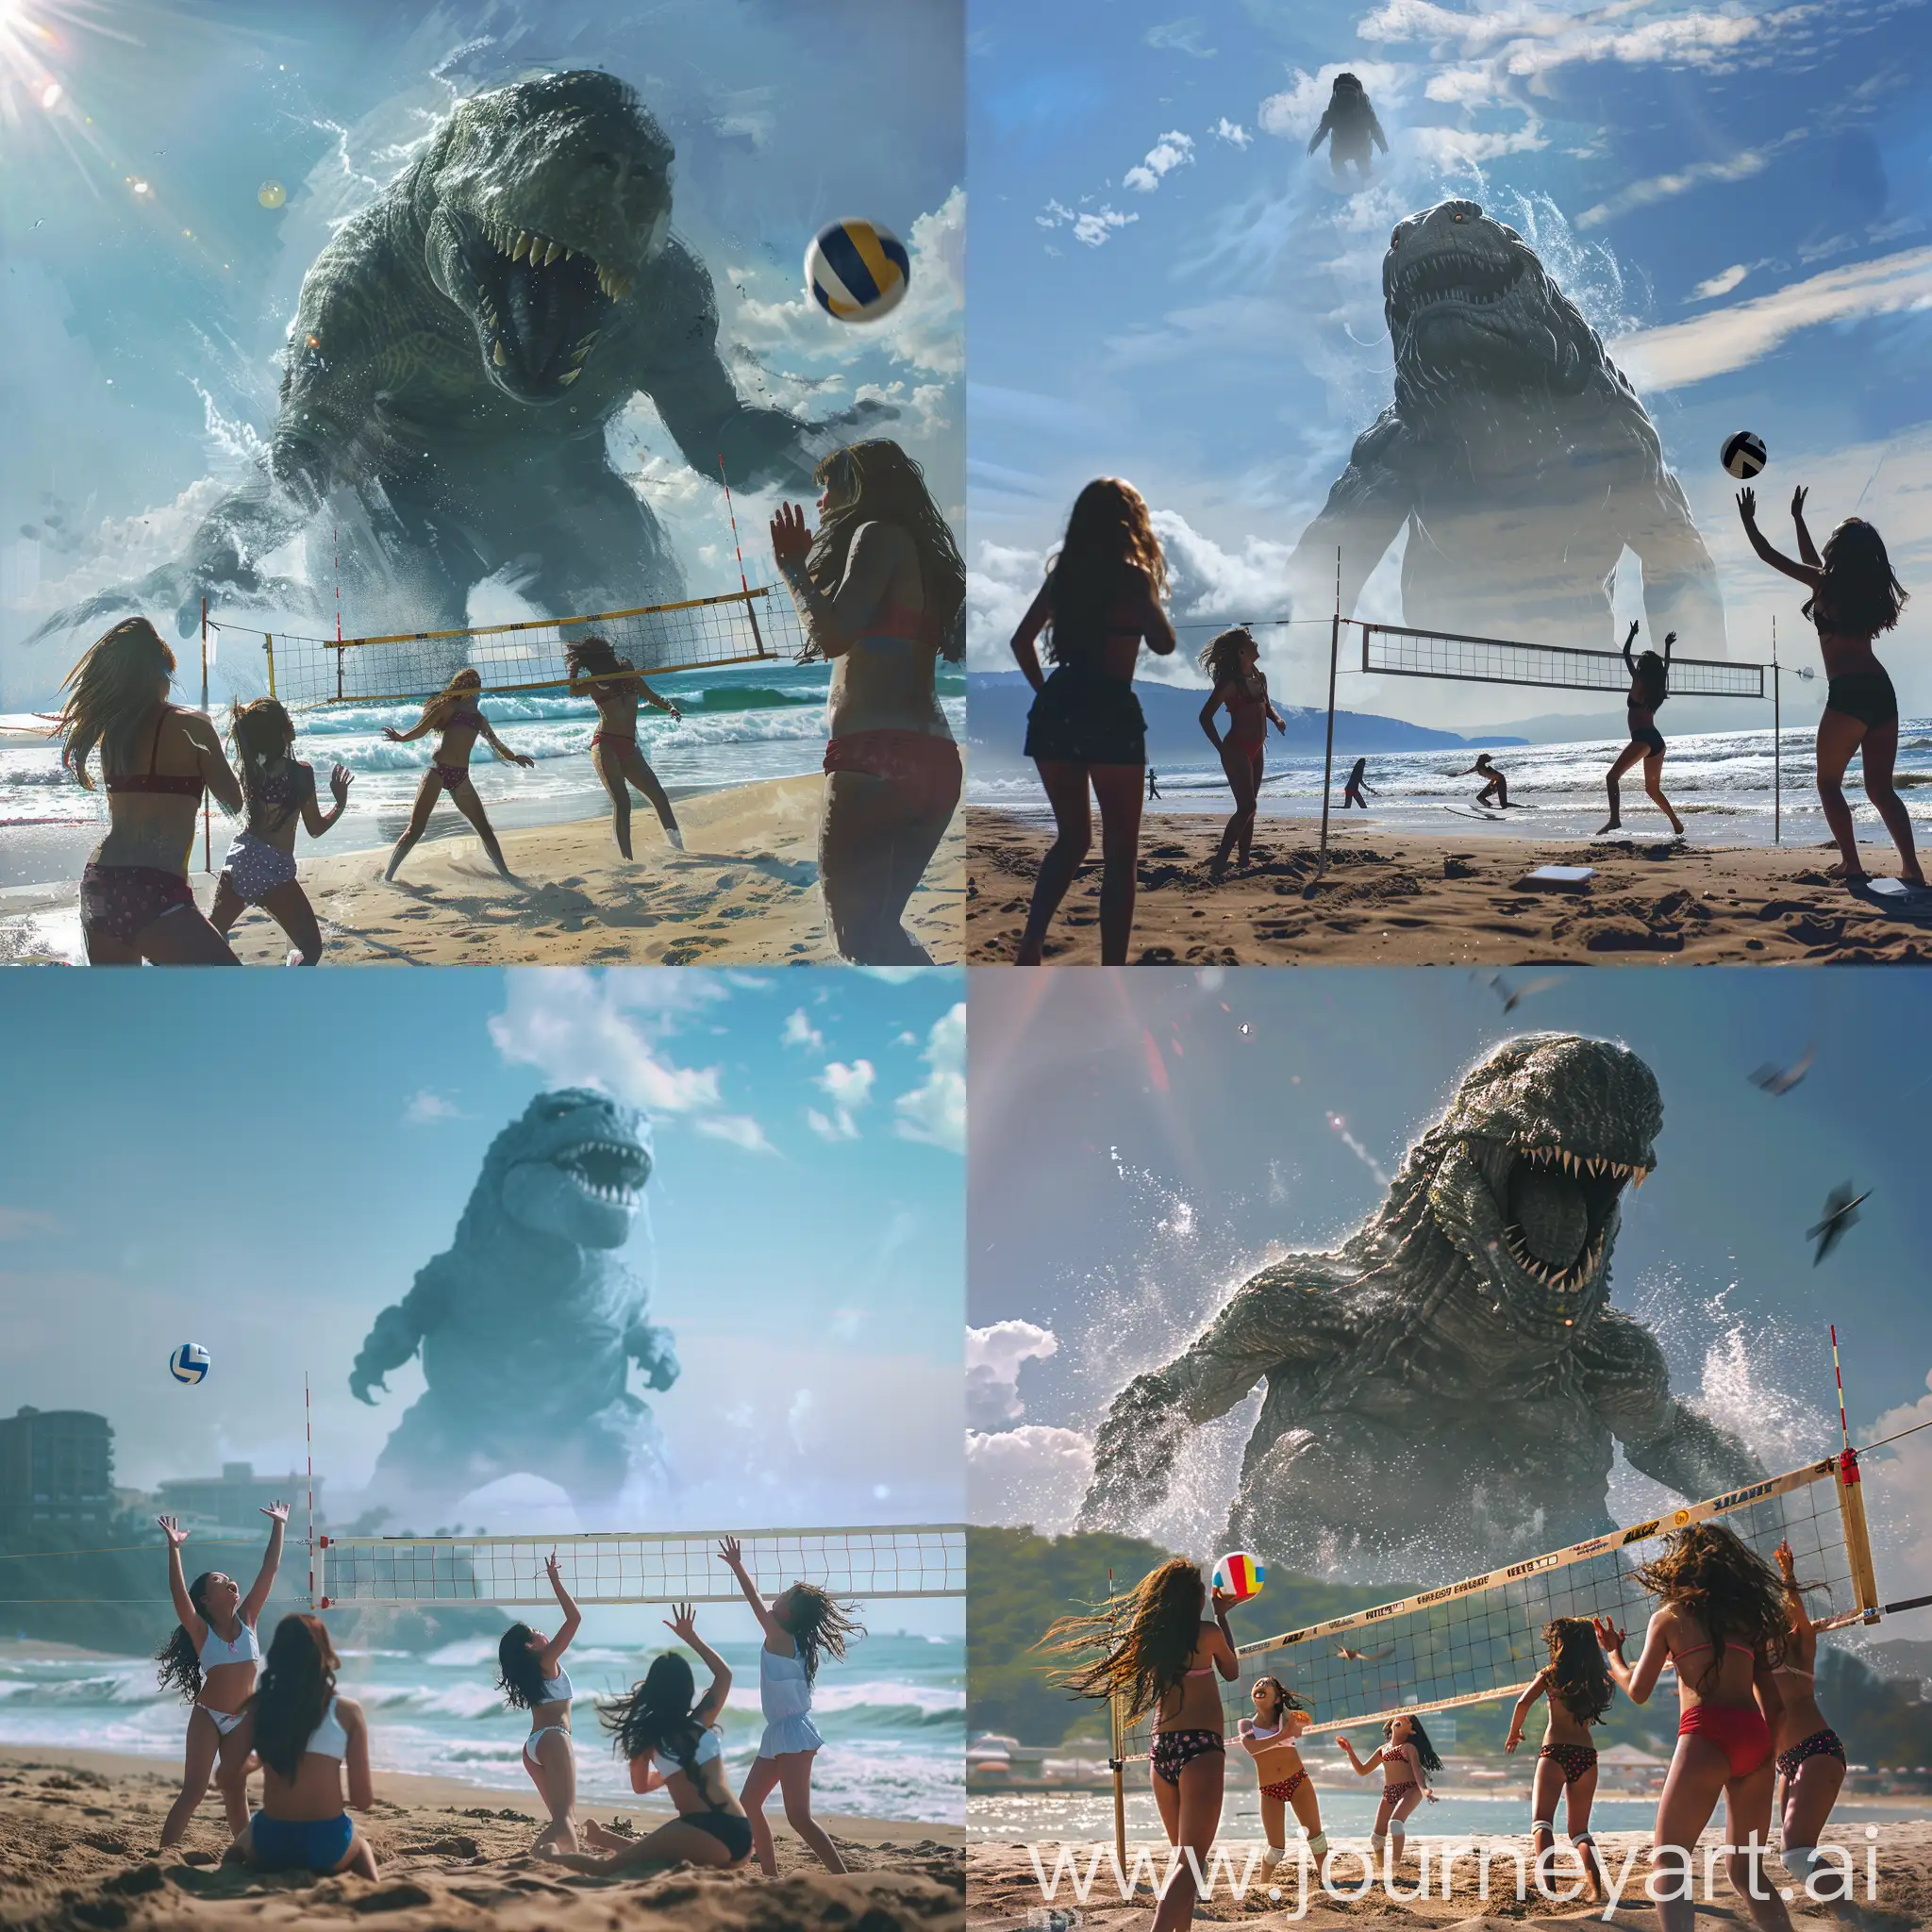 海边沙滩上，4个16岁女孩开心的打沙滩排球，天气很好，大海远处有一个巨大的怪兽向这边走来，4k图像 艺术感强